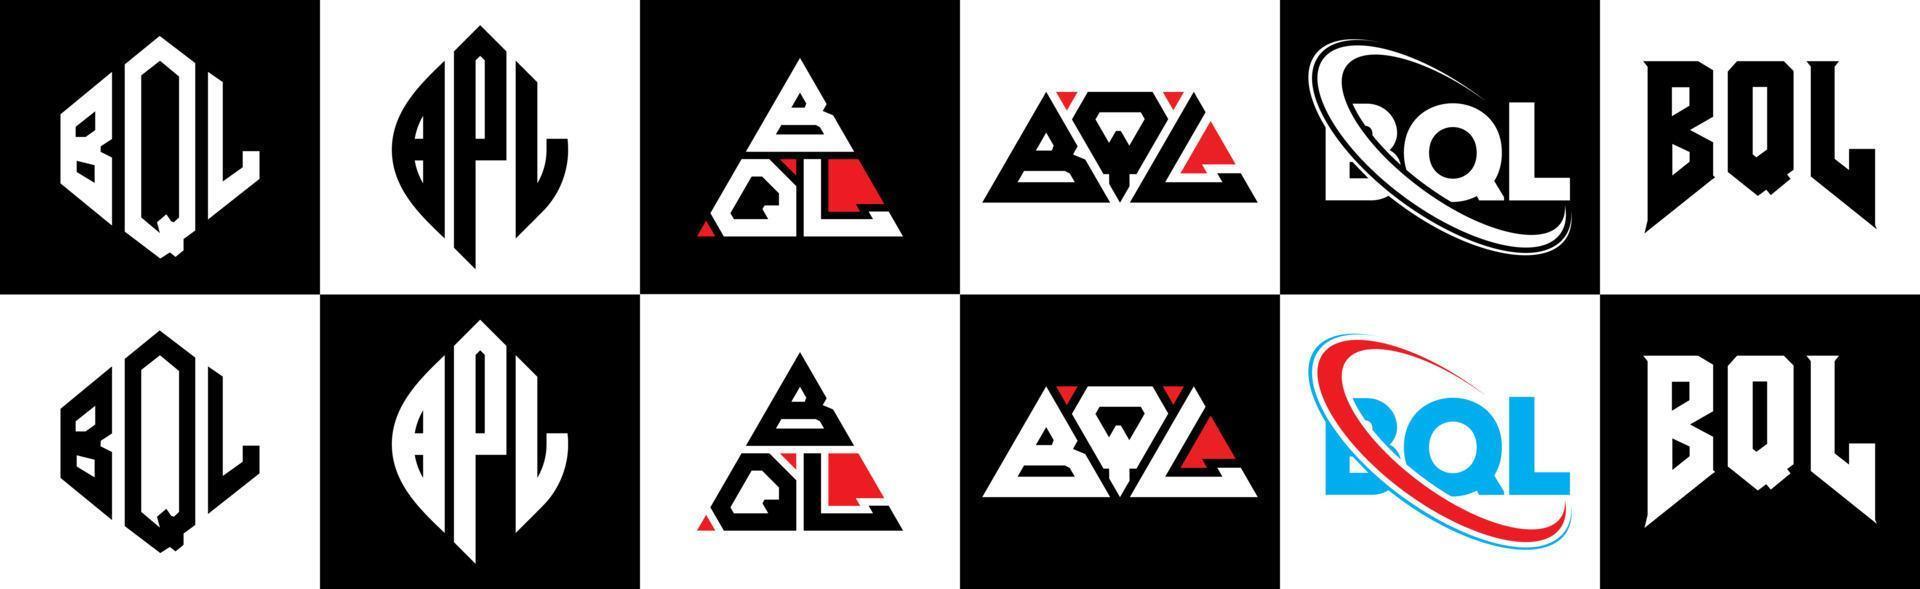 création de logo de lettre bql en six styles. polygone bql, cercle, triangle, hexagone, style plat et simple avec logo de lettre de variation de couleur noir et blanc dans un plan de travail. logo bql minimaliste et classique vecteur